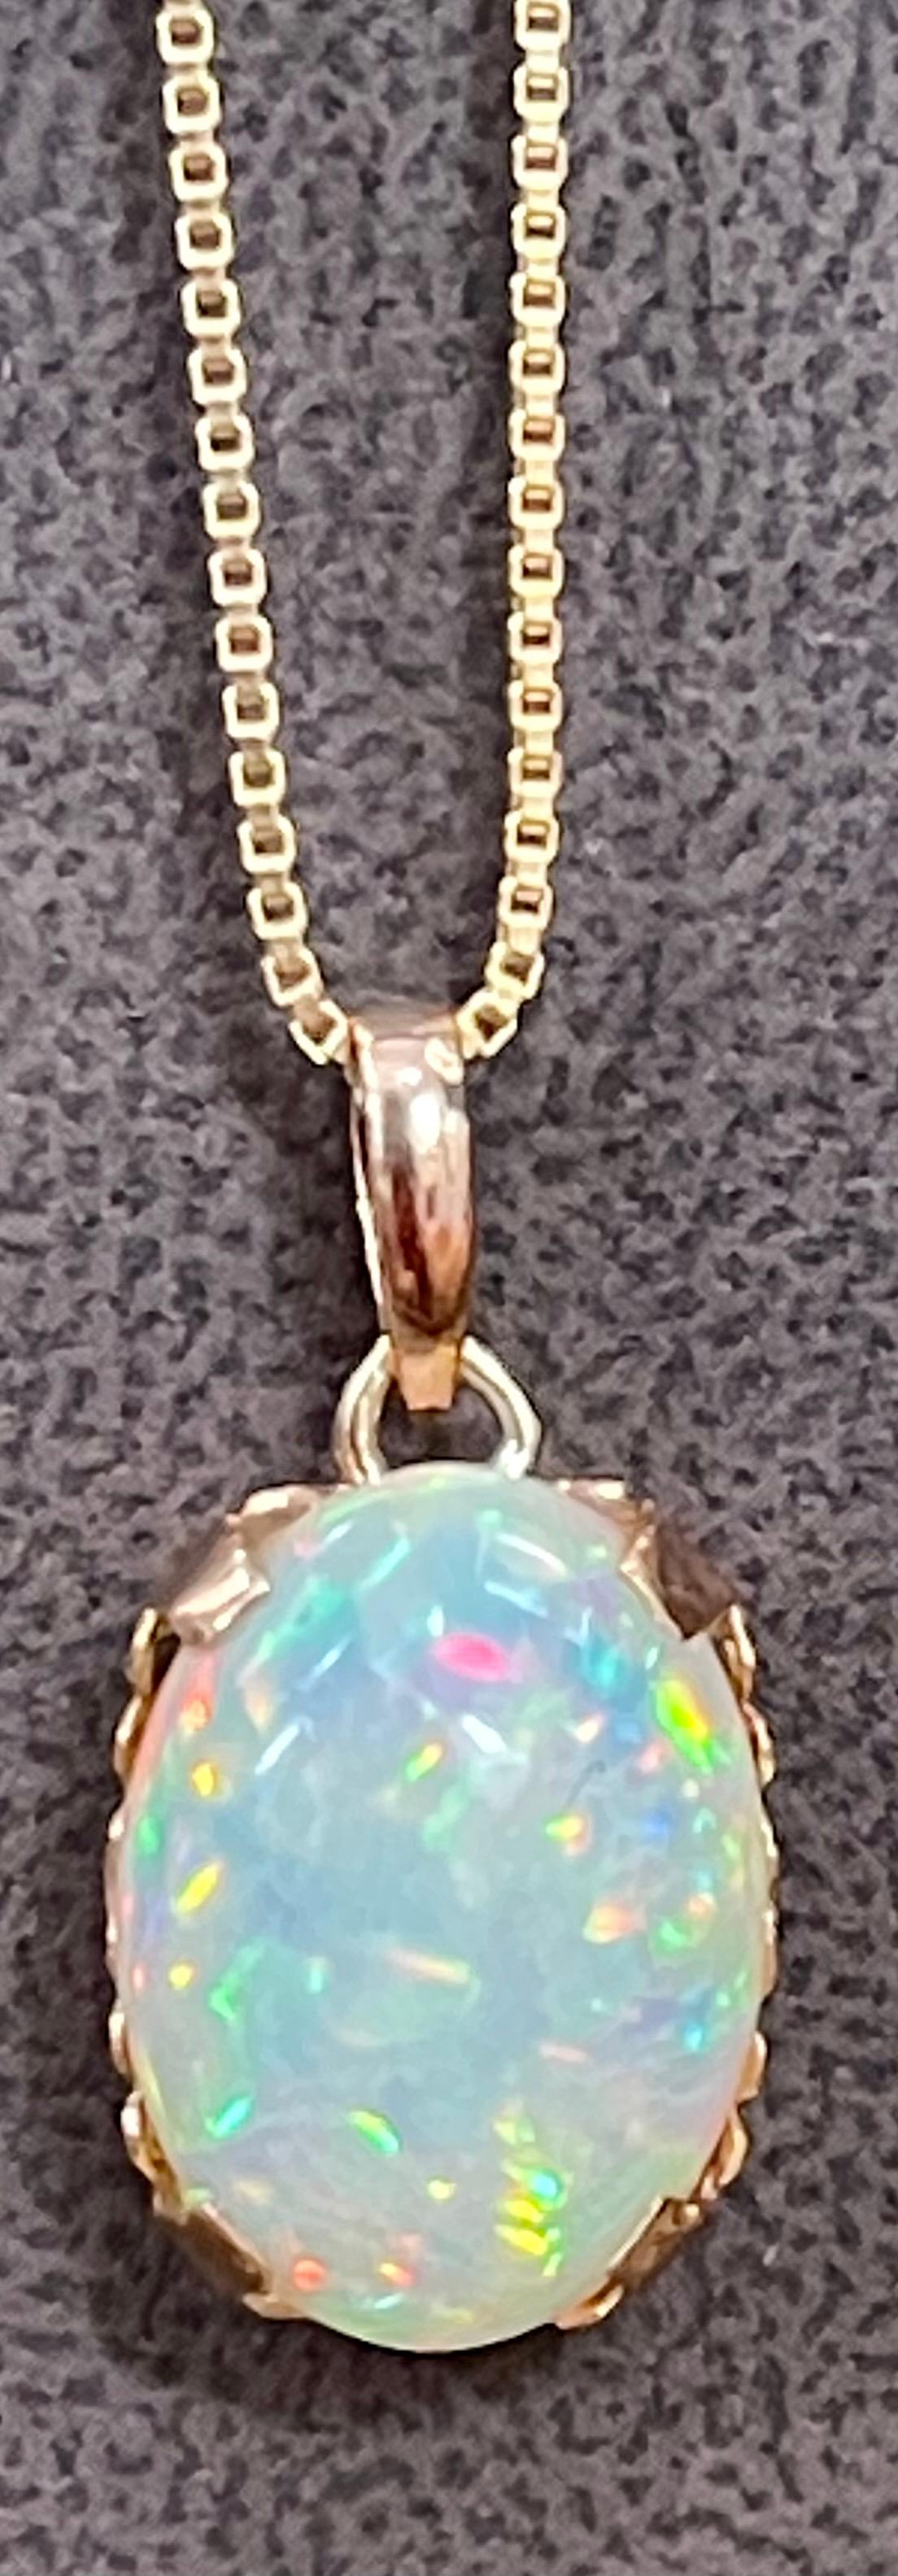 9 Carat Oval Ethiopian Opal Pendant / Necklace 18 Karat + 18 Kt Gold Chain 9